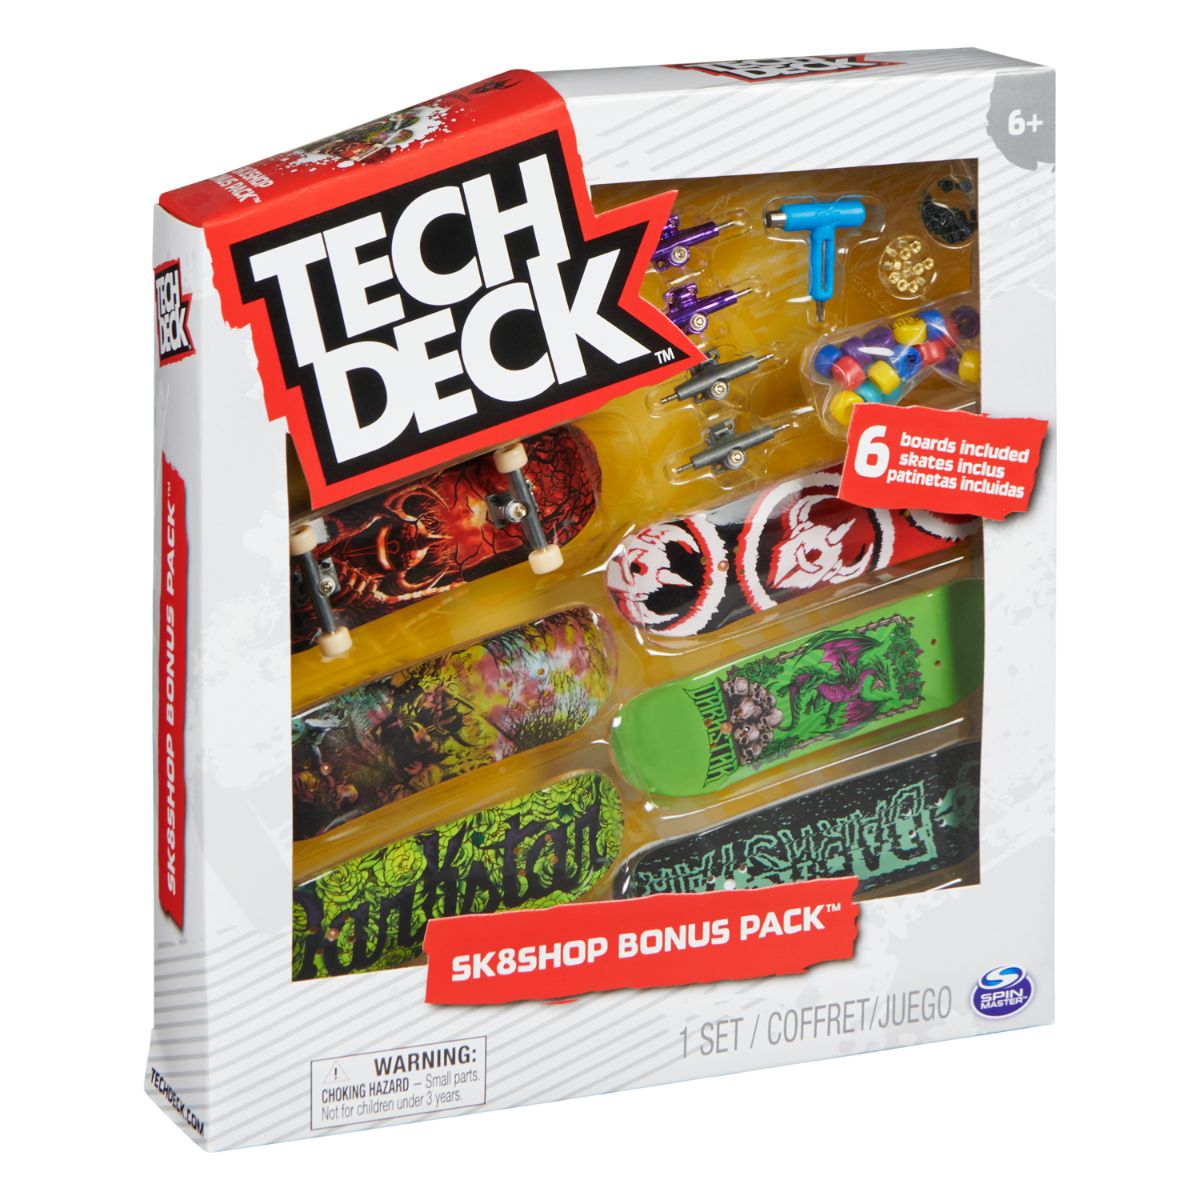 Set 6 mini placi skateboard, Tech Deck, Bonus Pack 20136704